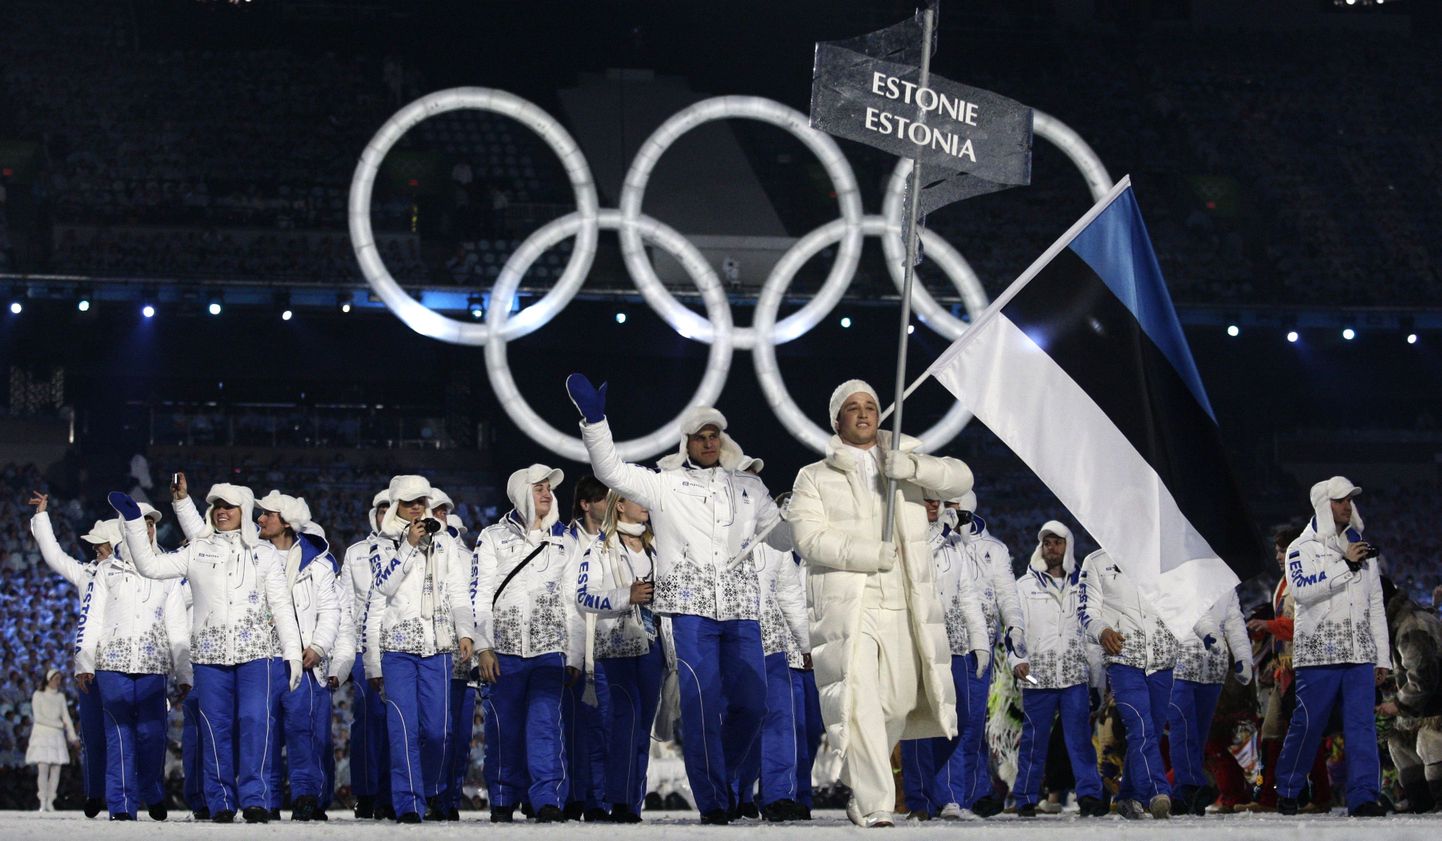 Сборная Эстонии на открытии Олимпиады в Ванкувере.